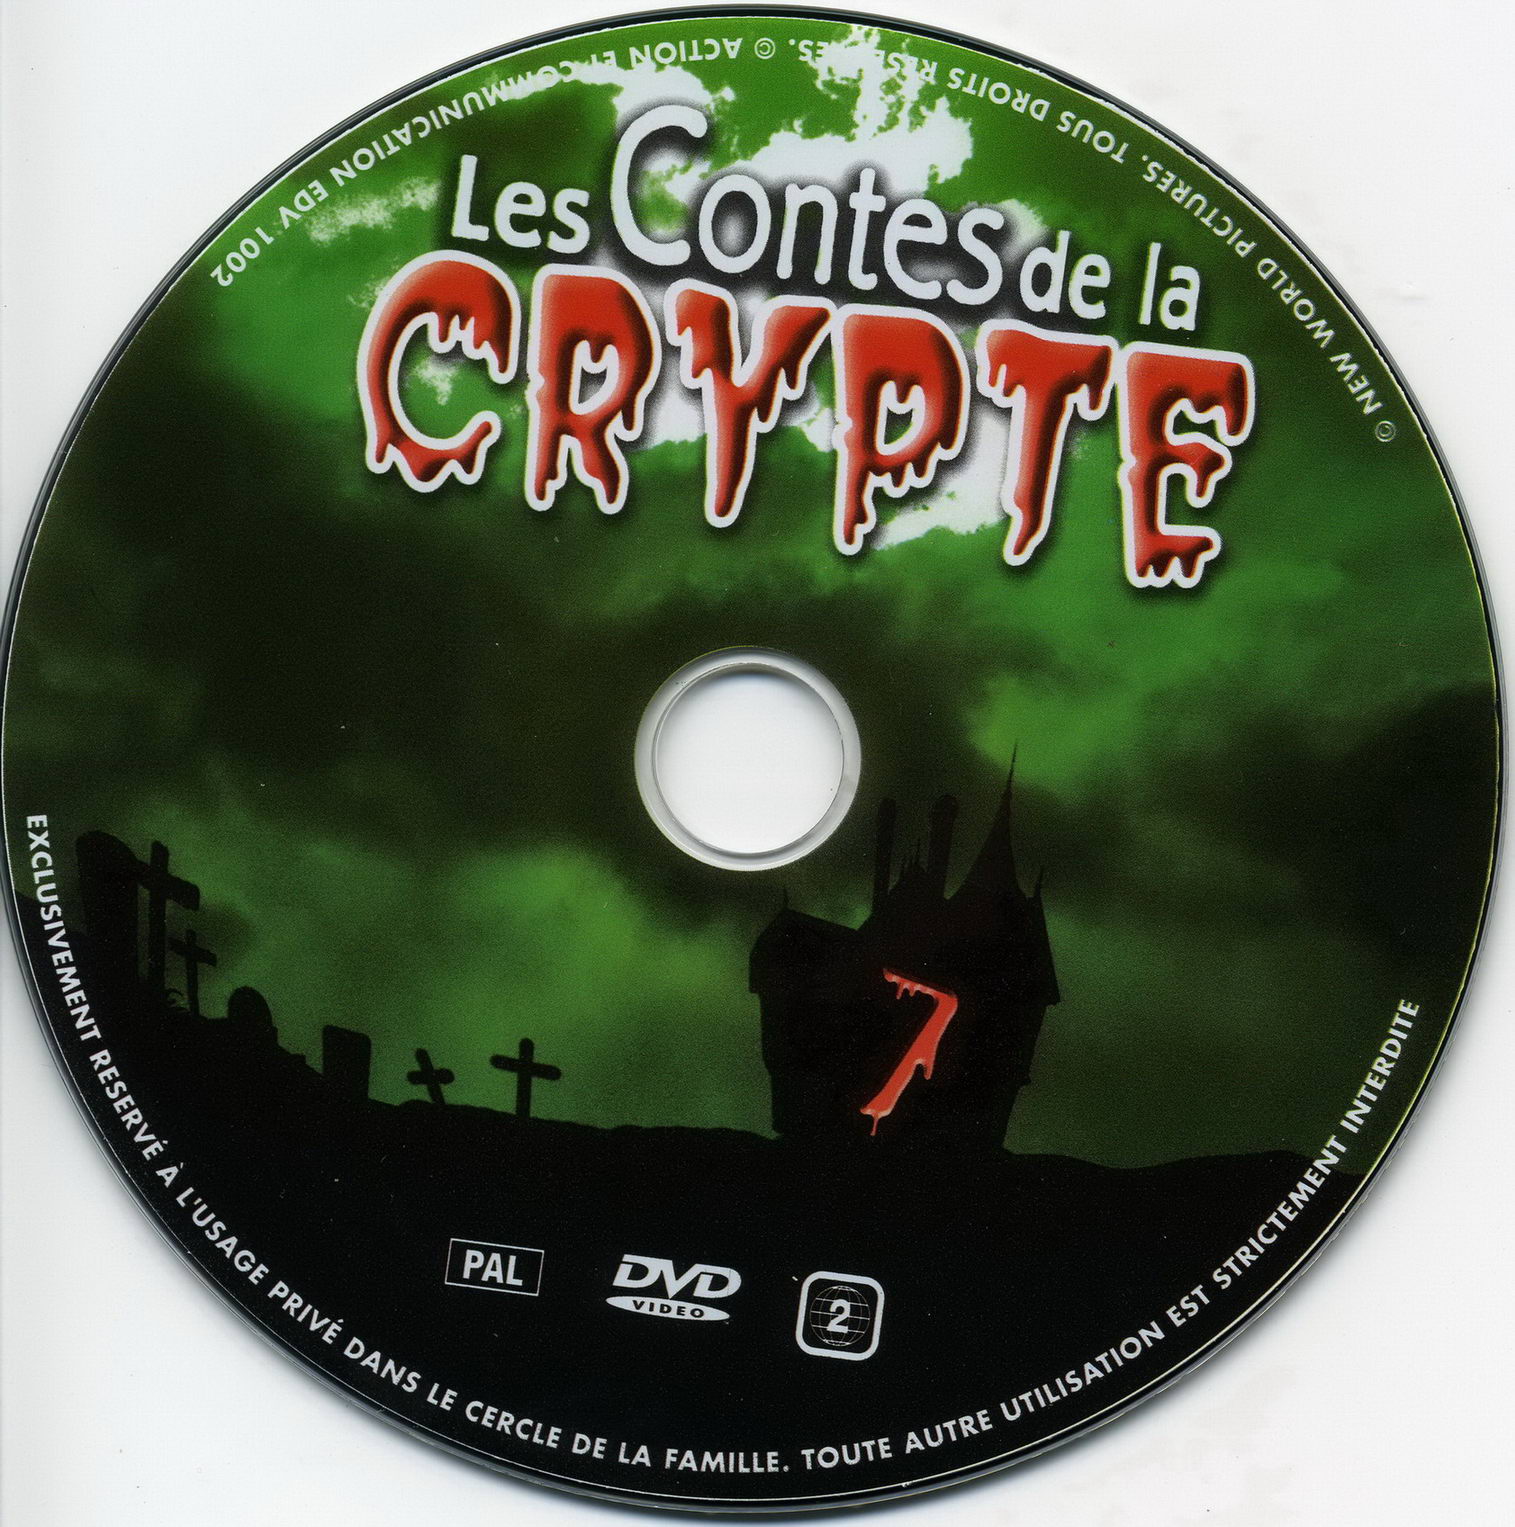 Les contes de la crypte vol 07 v2